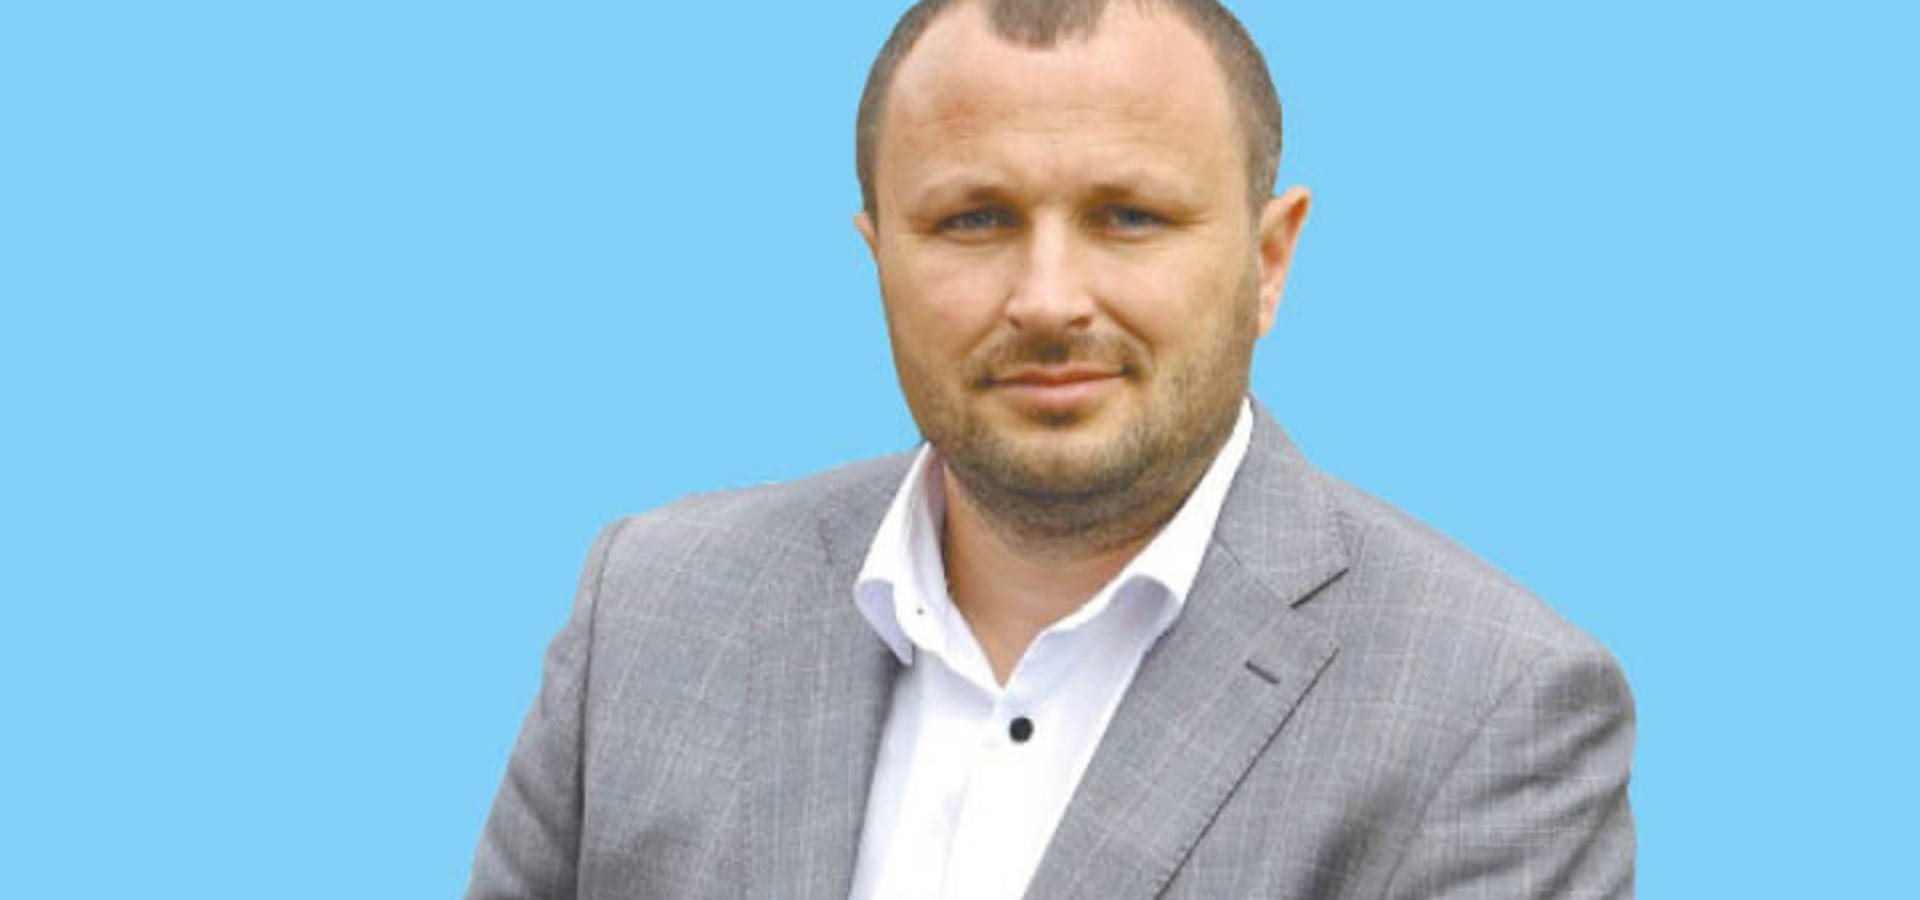 Уланівським сільським головою на Вінниччині обрано Олександра Крученюка